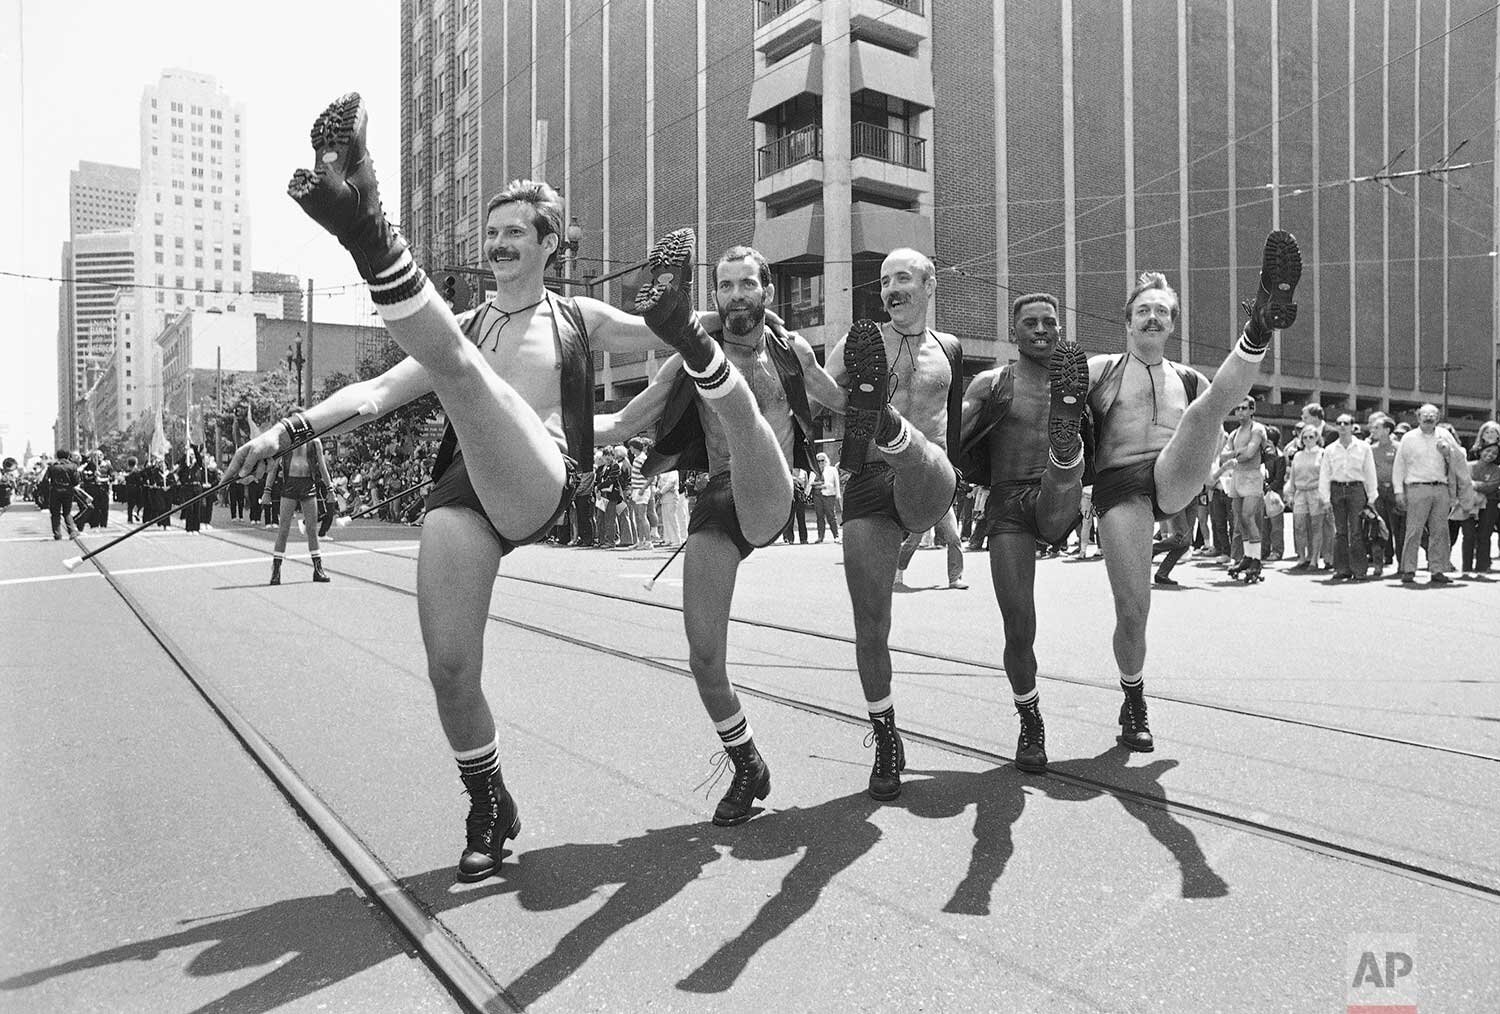 A Brief History Of Chicago's Pride Parade